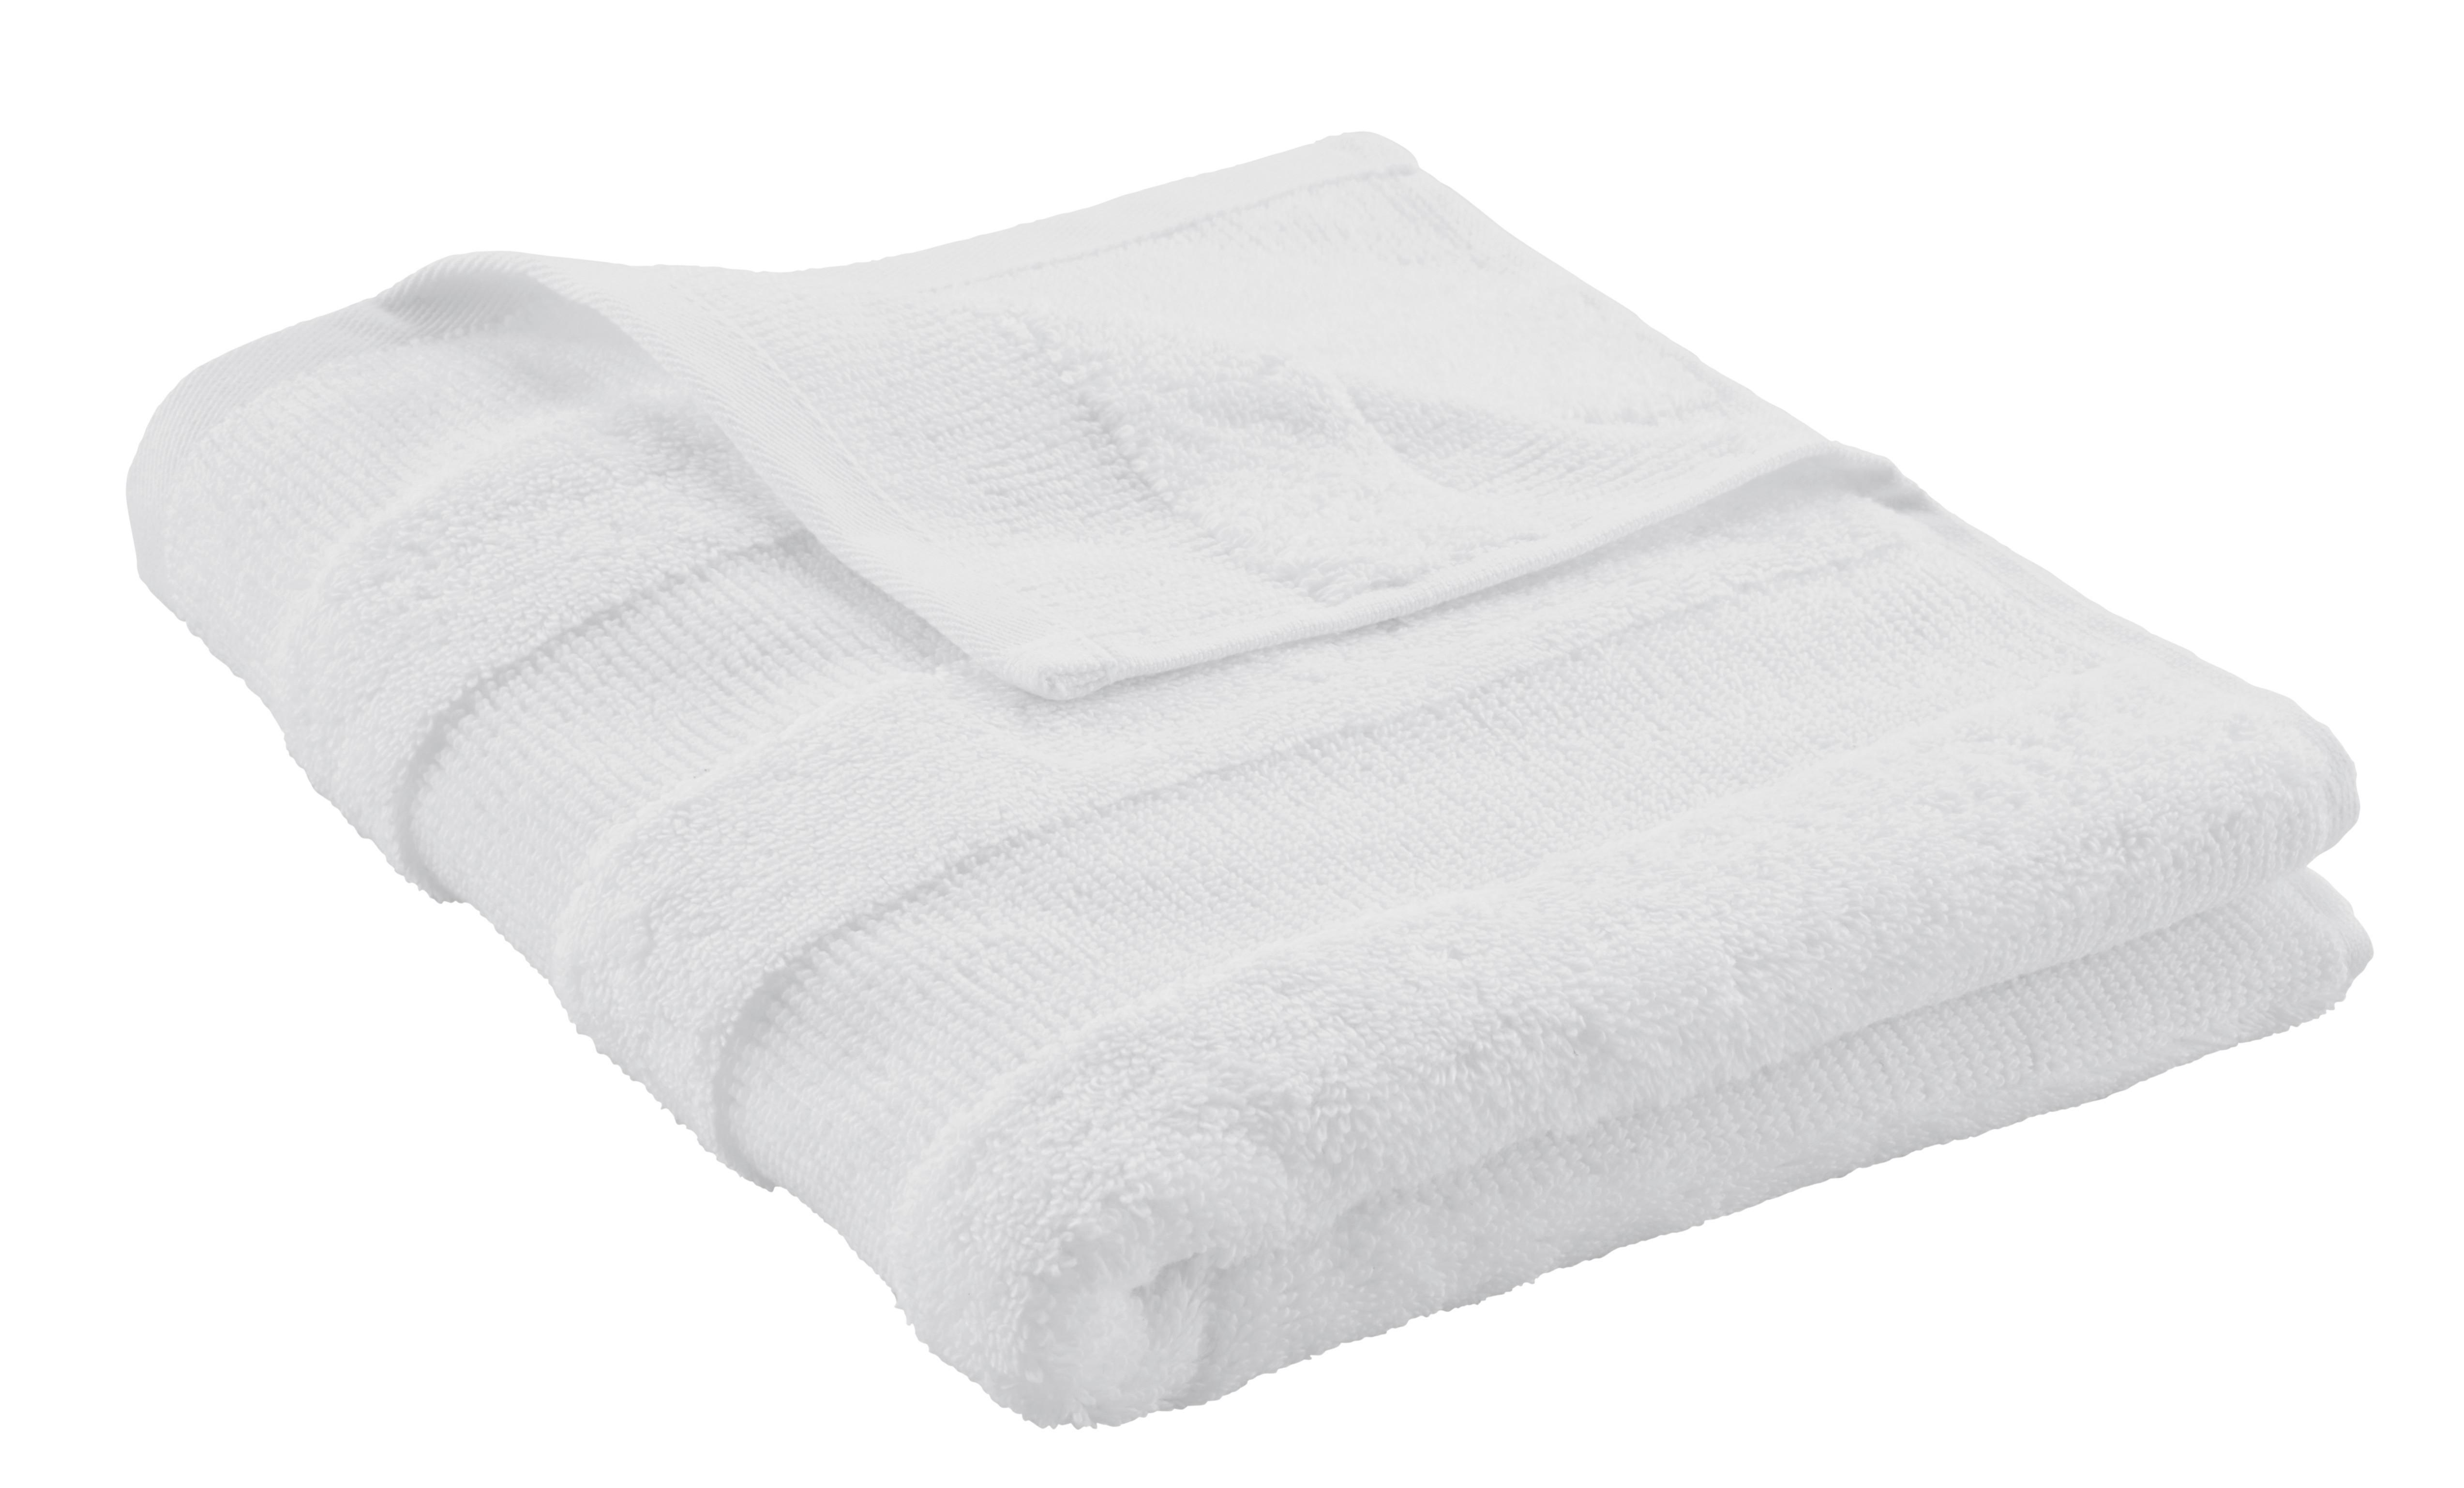 Handtuch Chris in Weiß ca. 50x100cm - Weiß, Textil (50/100cm) - Premium Living